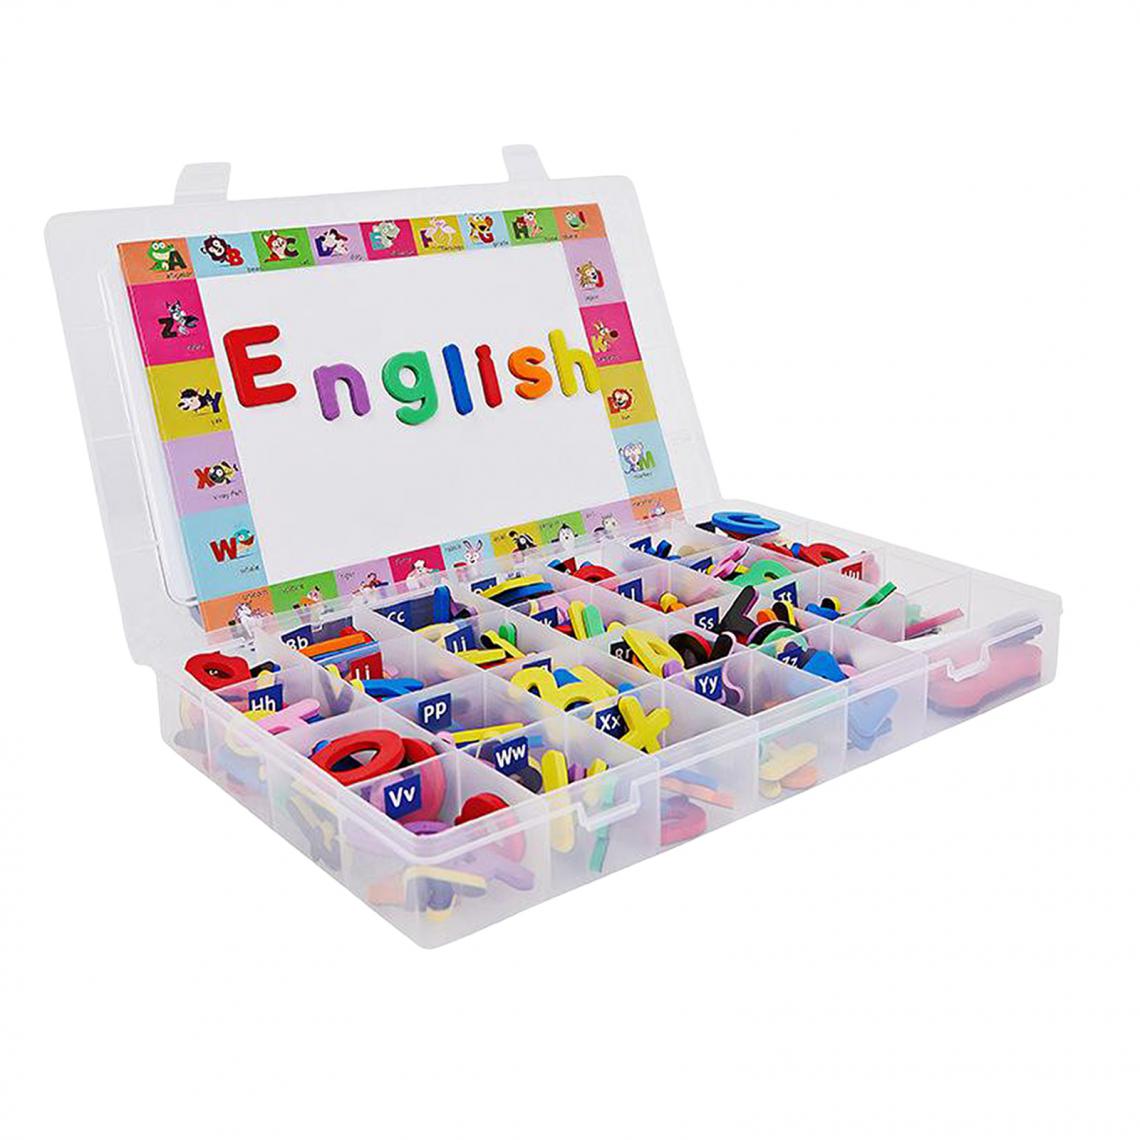 marque generique - Alphabet Anglais Enfants Jeu D'orthographe Jouet Enfants Lettre Jouet Style A - Kit d'expériences